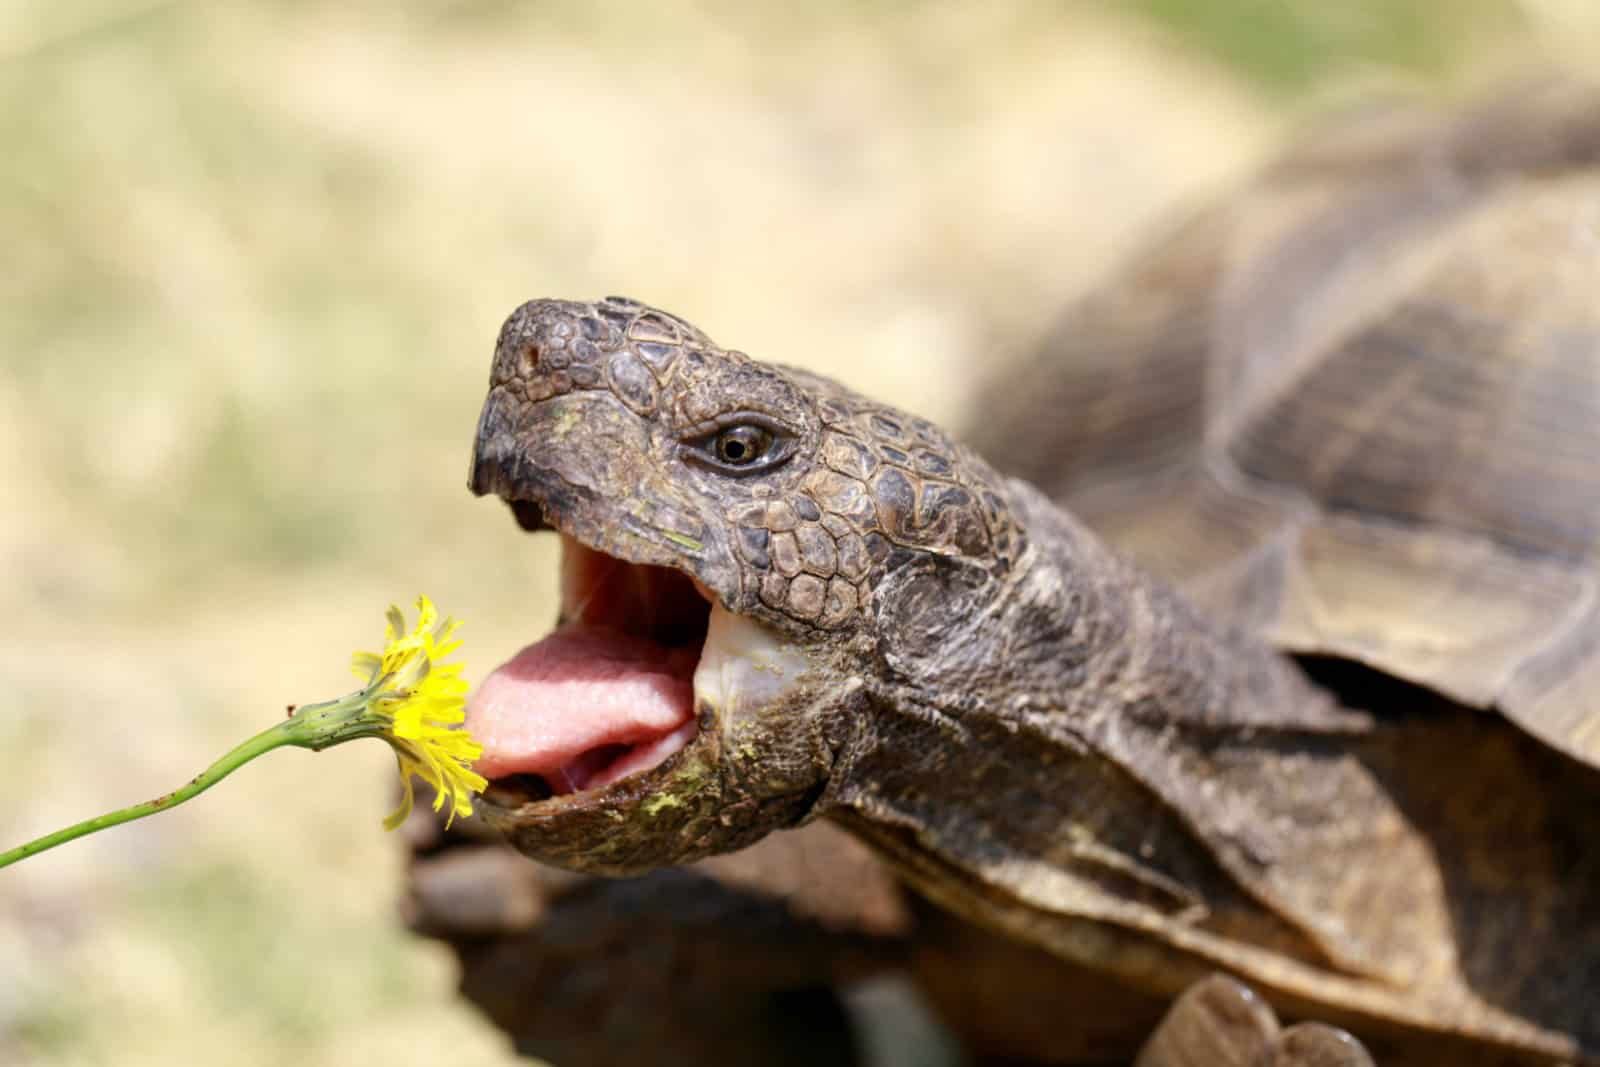 Captive adult male California Desert Tortoise eating Dandelion